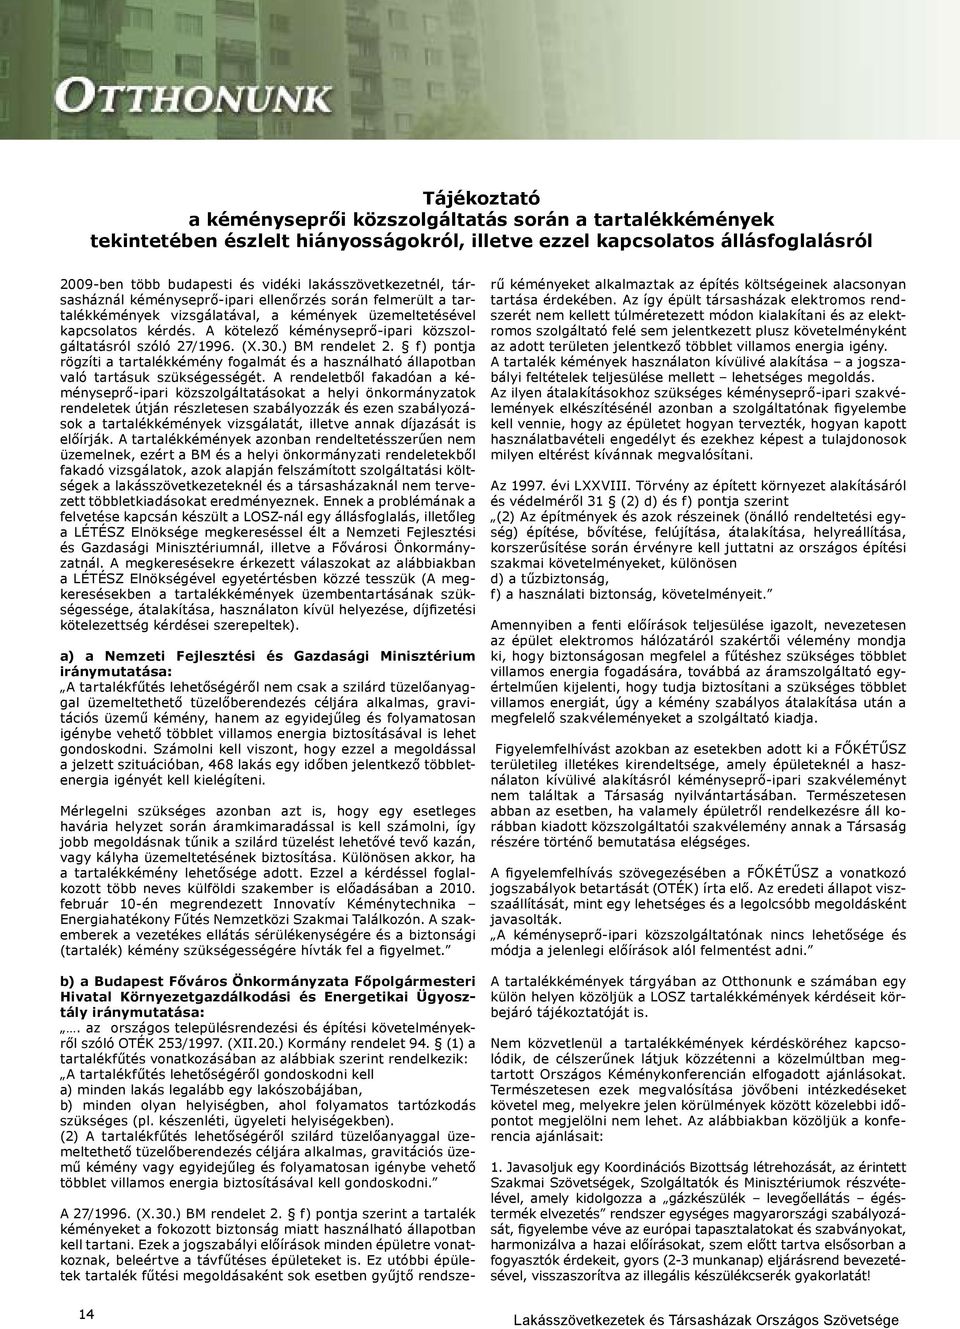 A kötelező kéményseprő-ipari közszolgáltatásról szóló 27/1996. (X.30.) BM rendelet 2. f) pontja rögzíti a tartalékkémény fogalmát és a használható állapotban való tartásuk szükségességét.